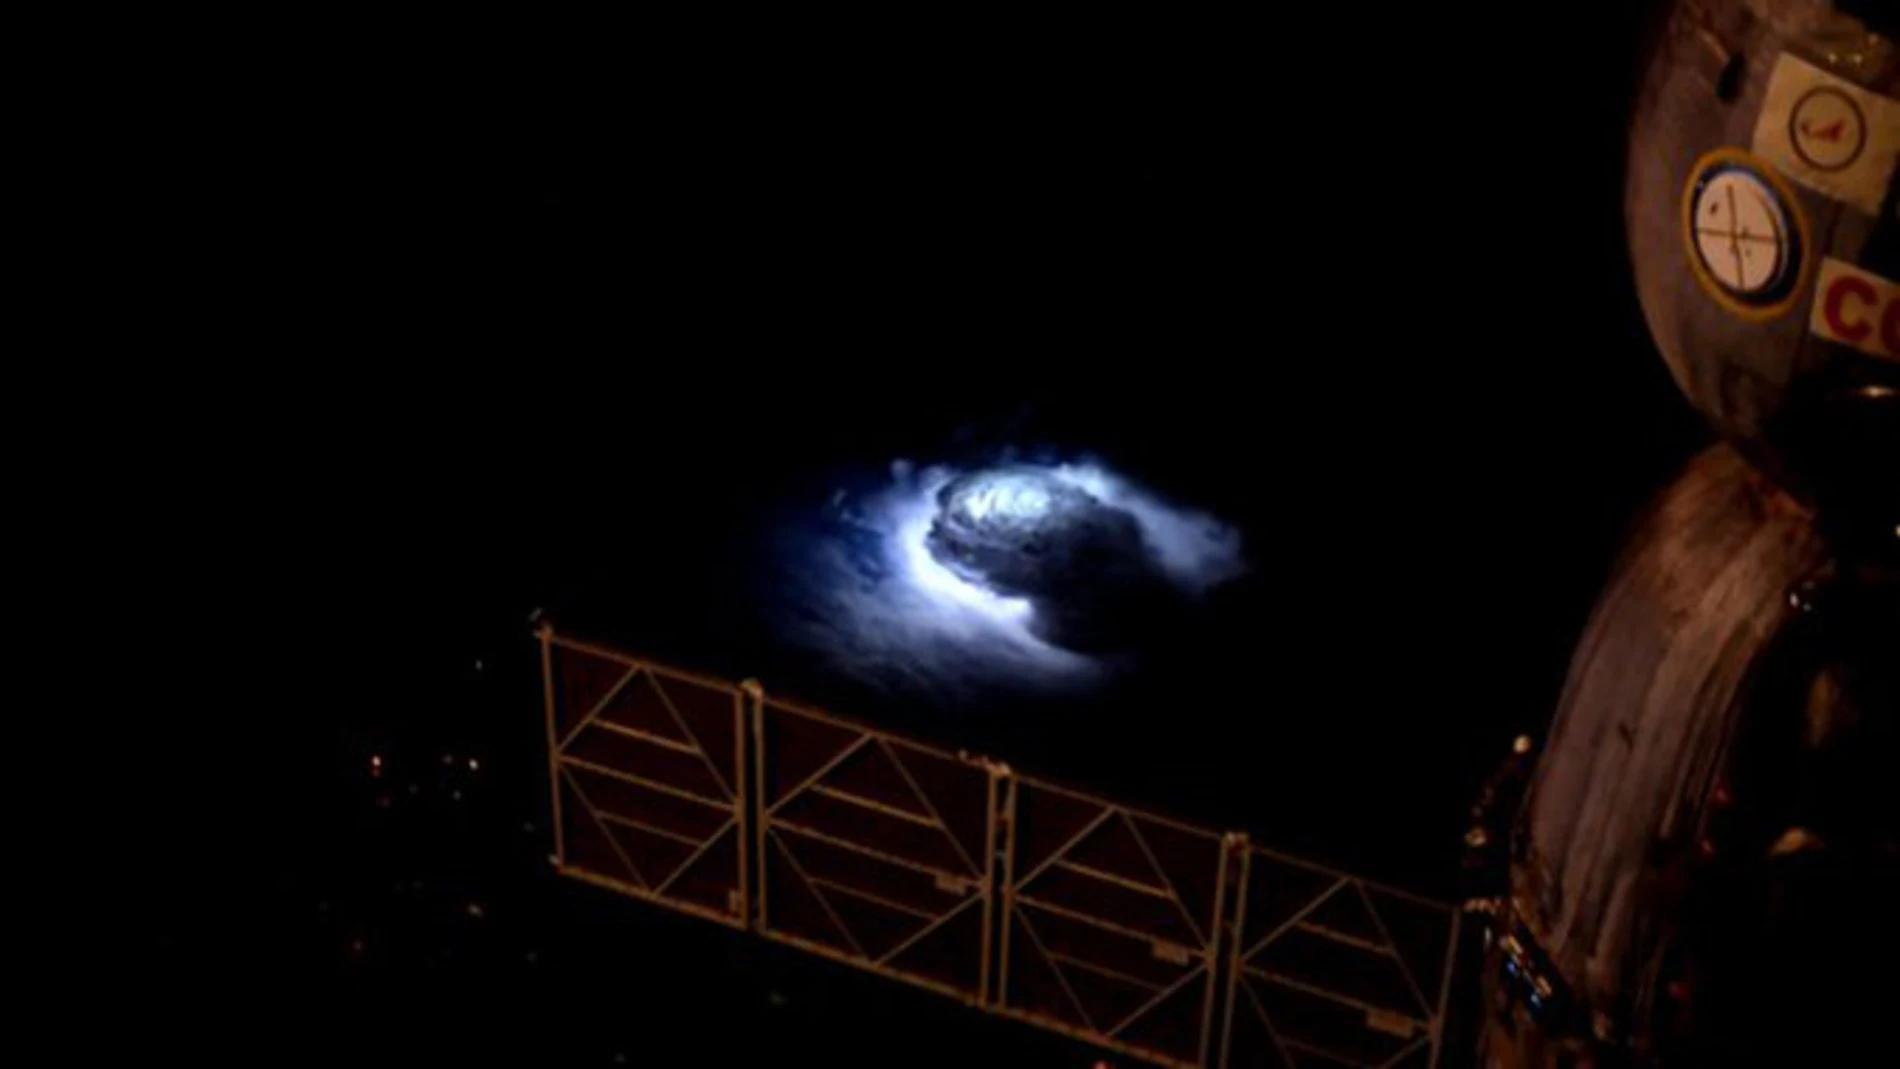 Chorros azules captados desde la estación espacial